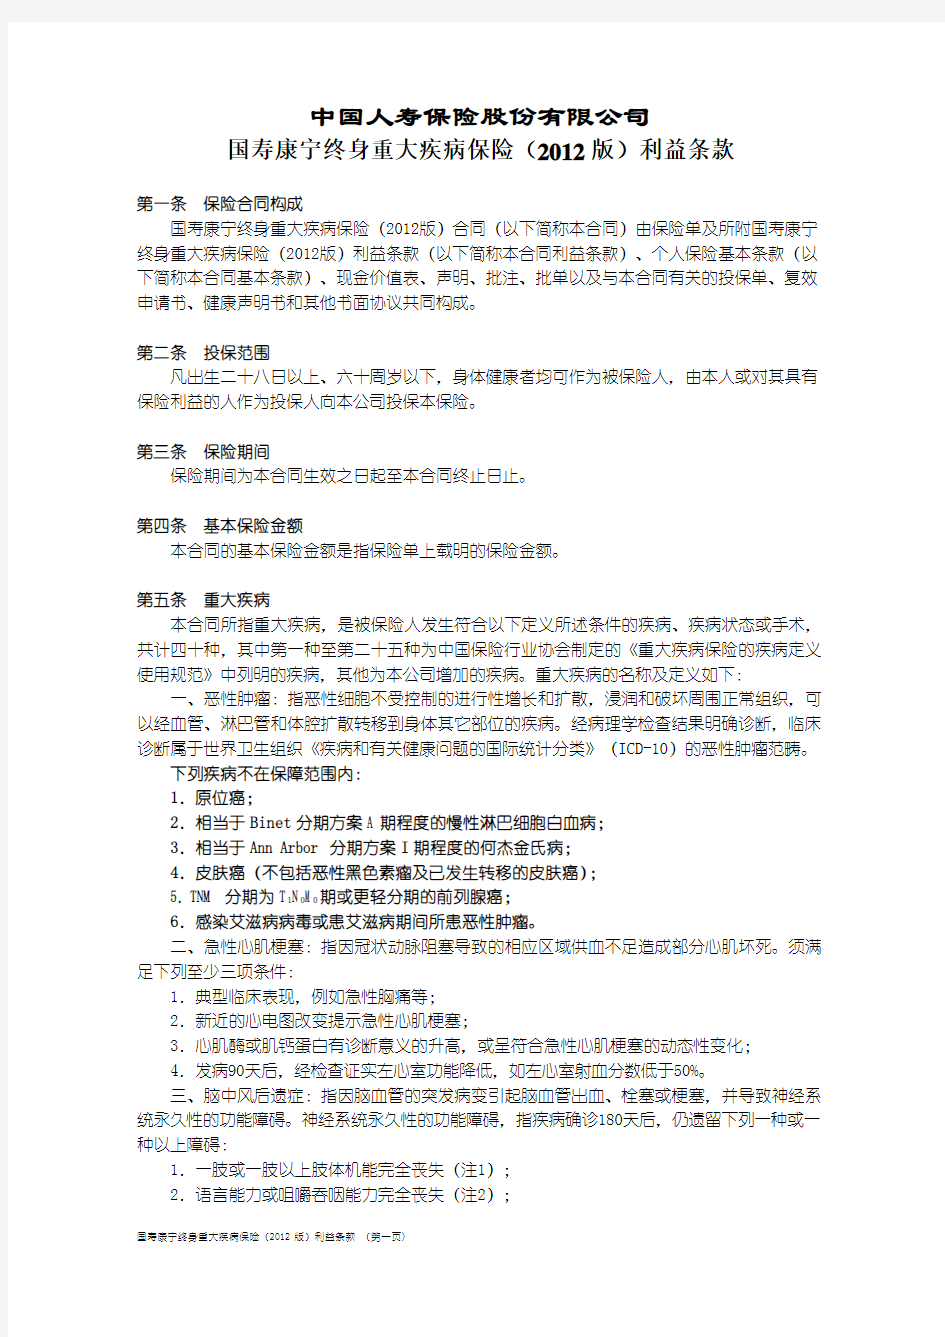 中国人寿康宁终身重大疾病保险(2012版)条款